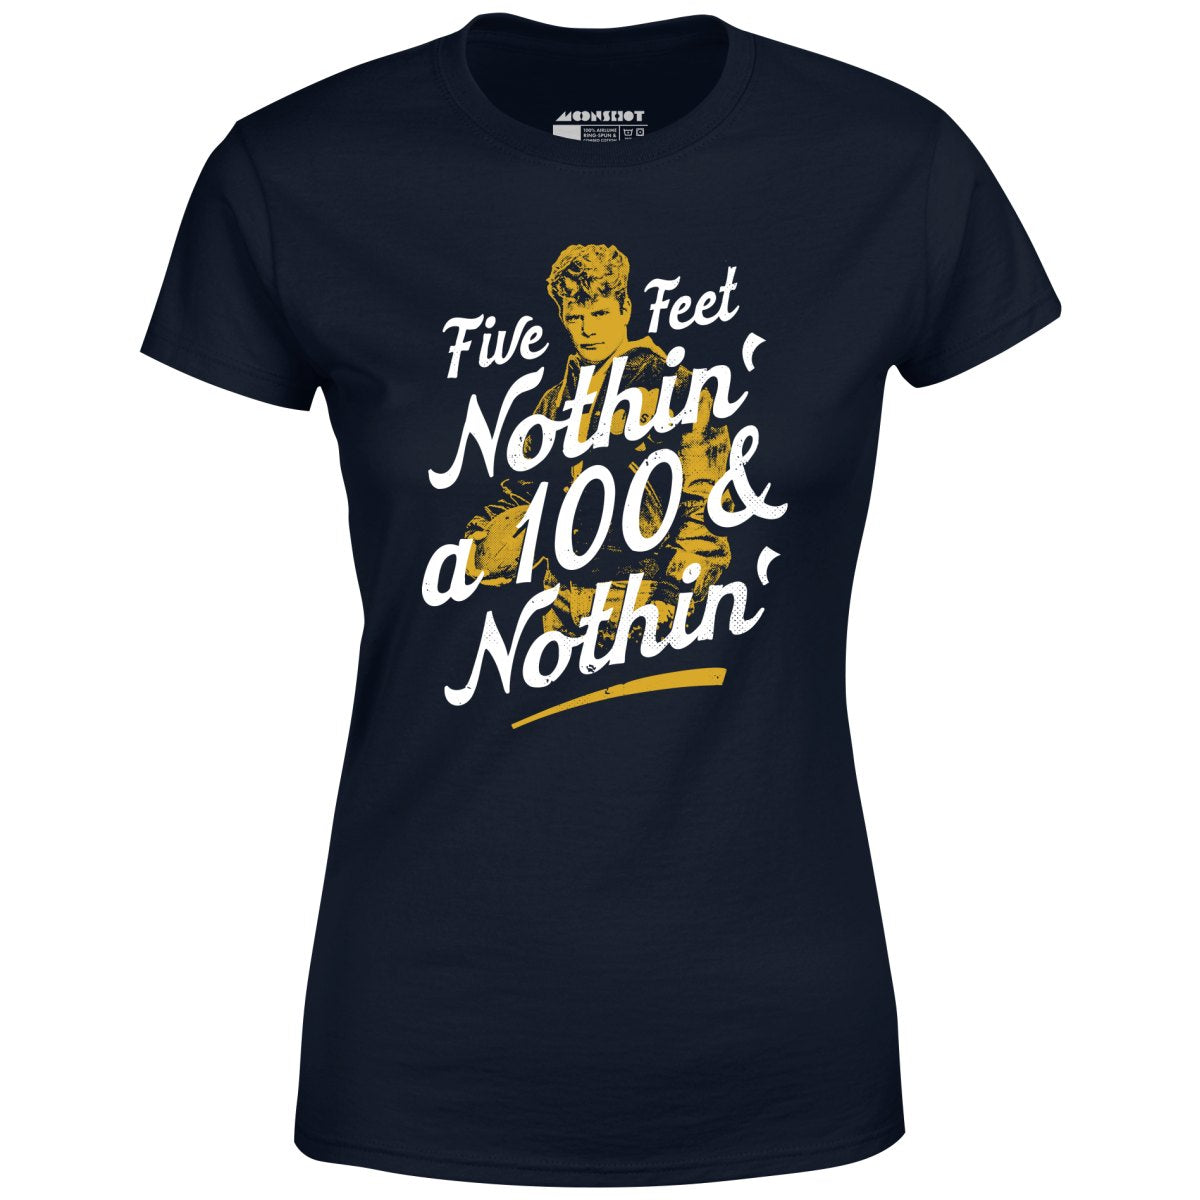 Rudy - Five Feet Nothin' a 100 & Nothin' - Women's T-Shirt